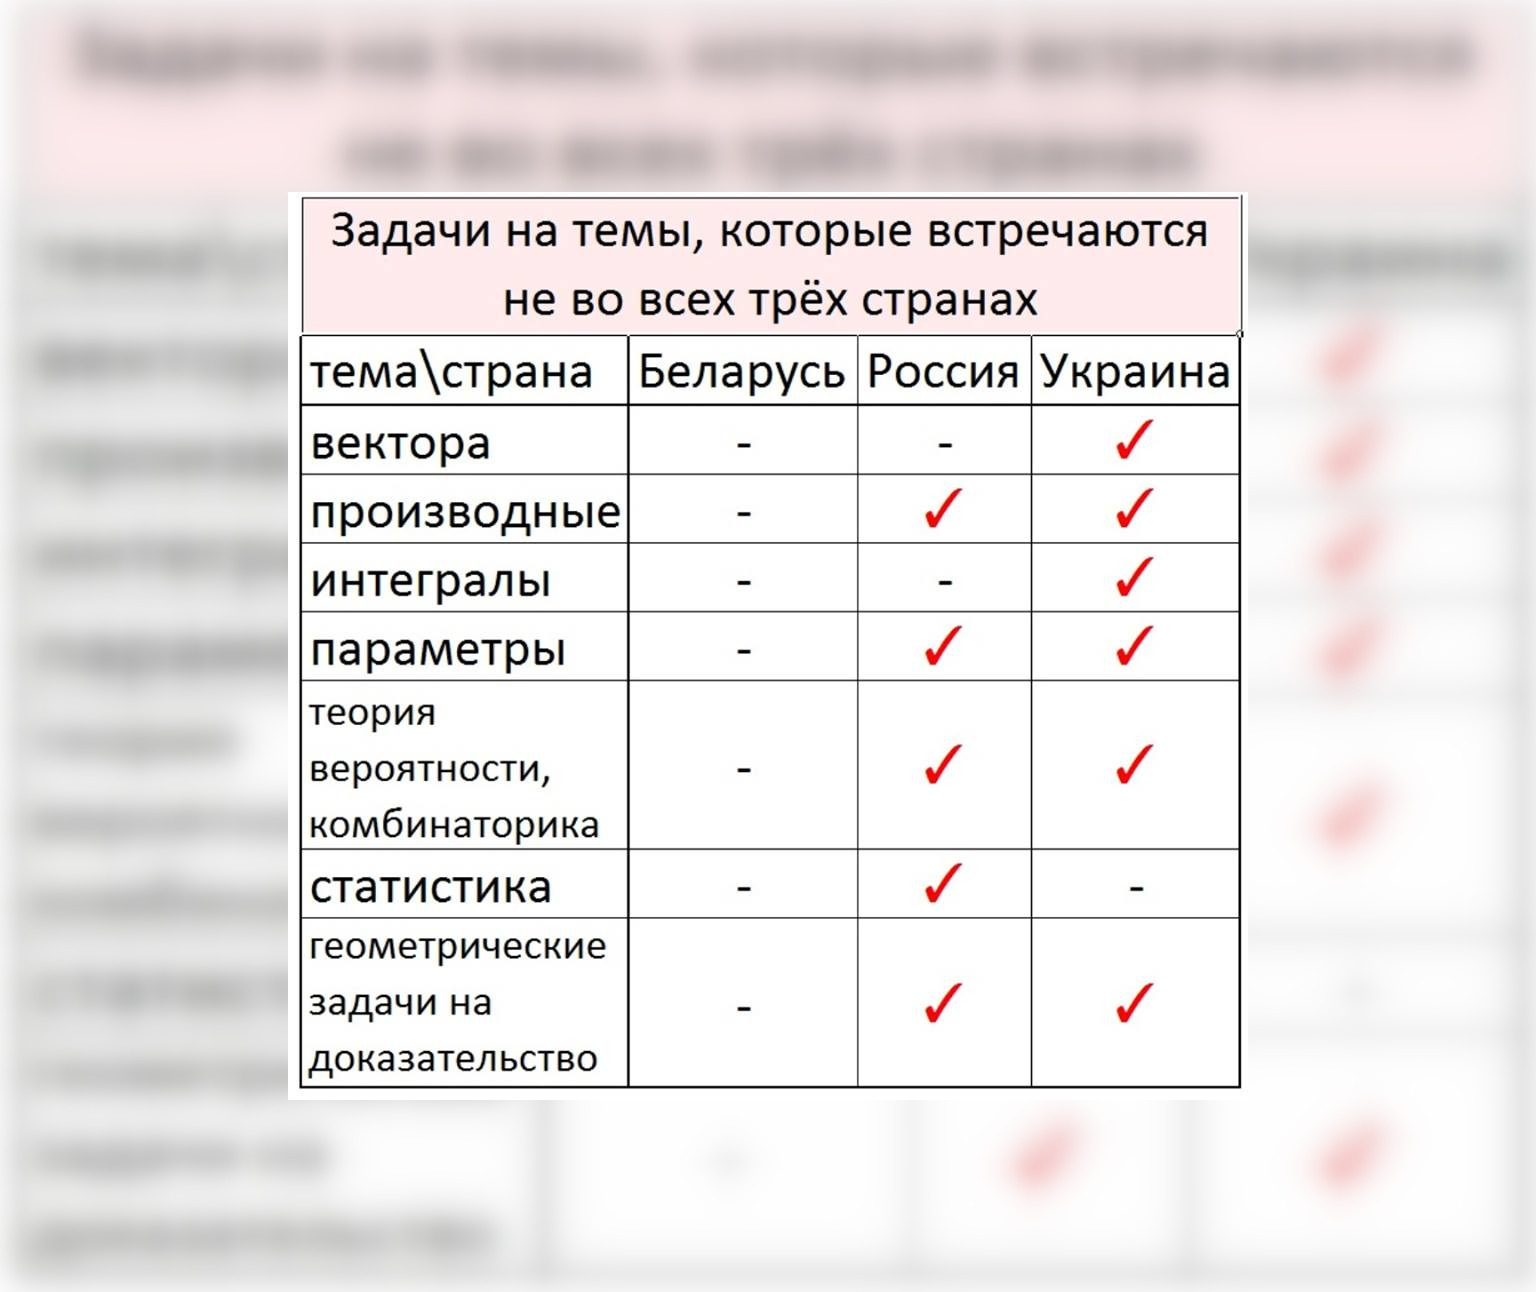 В Беларуси поступить в вуз проще, чем в России и Украине: сравниваем тесты